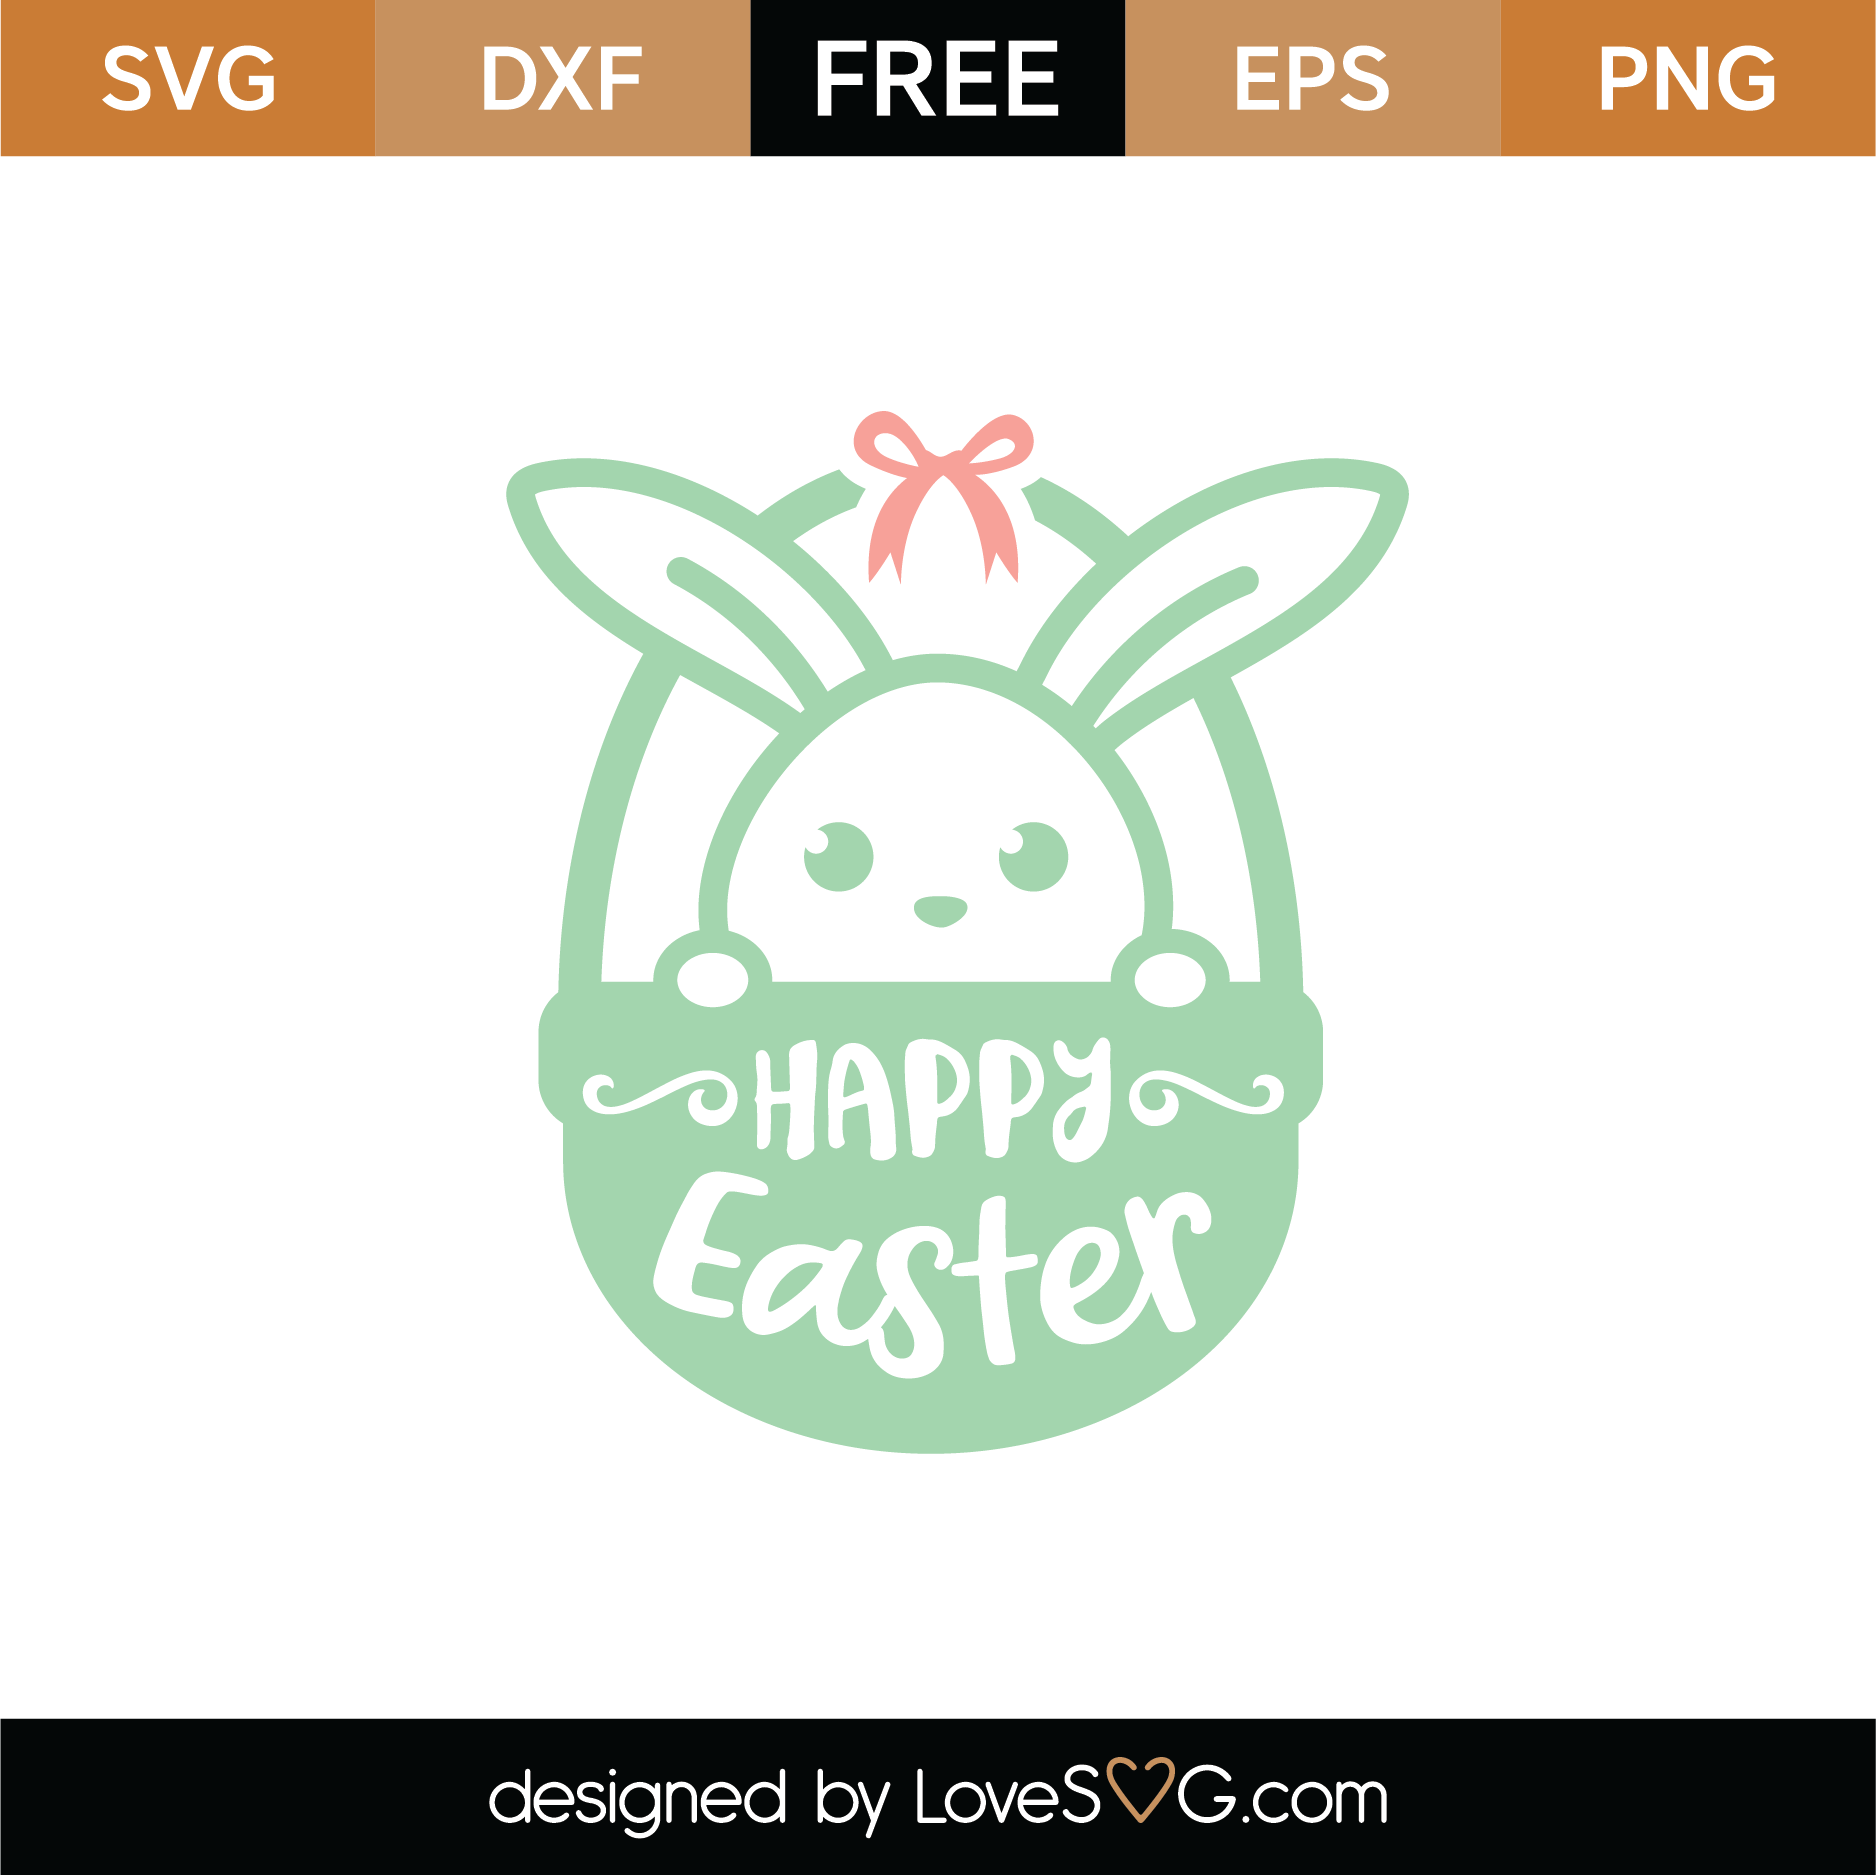 Download Free Happy Easter Basket SVG Cut File | Lovesvg.com